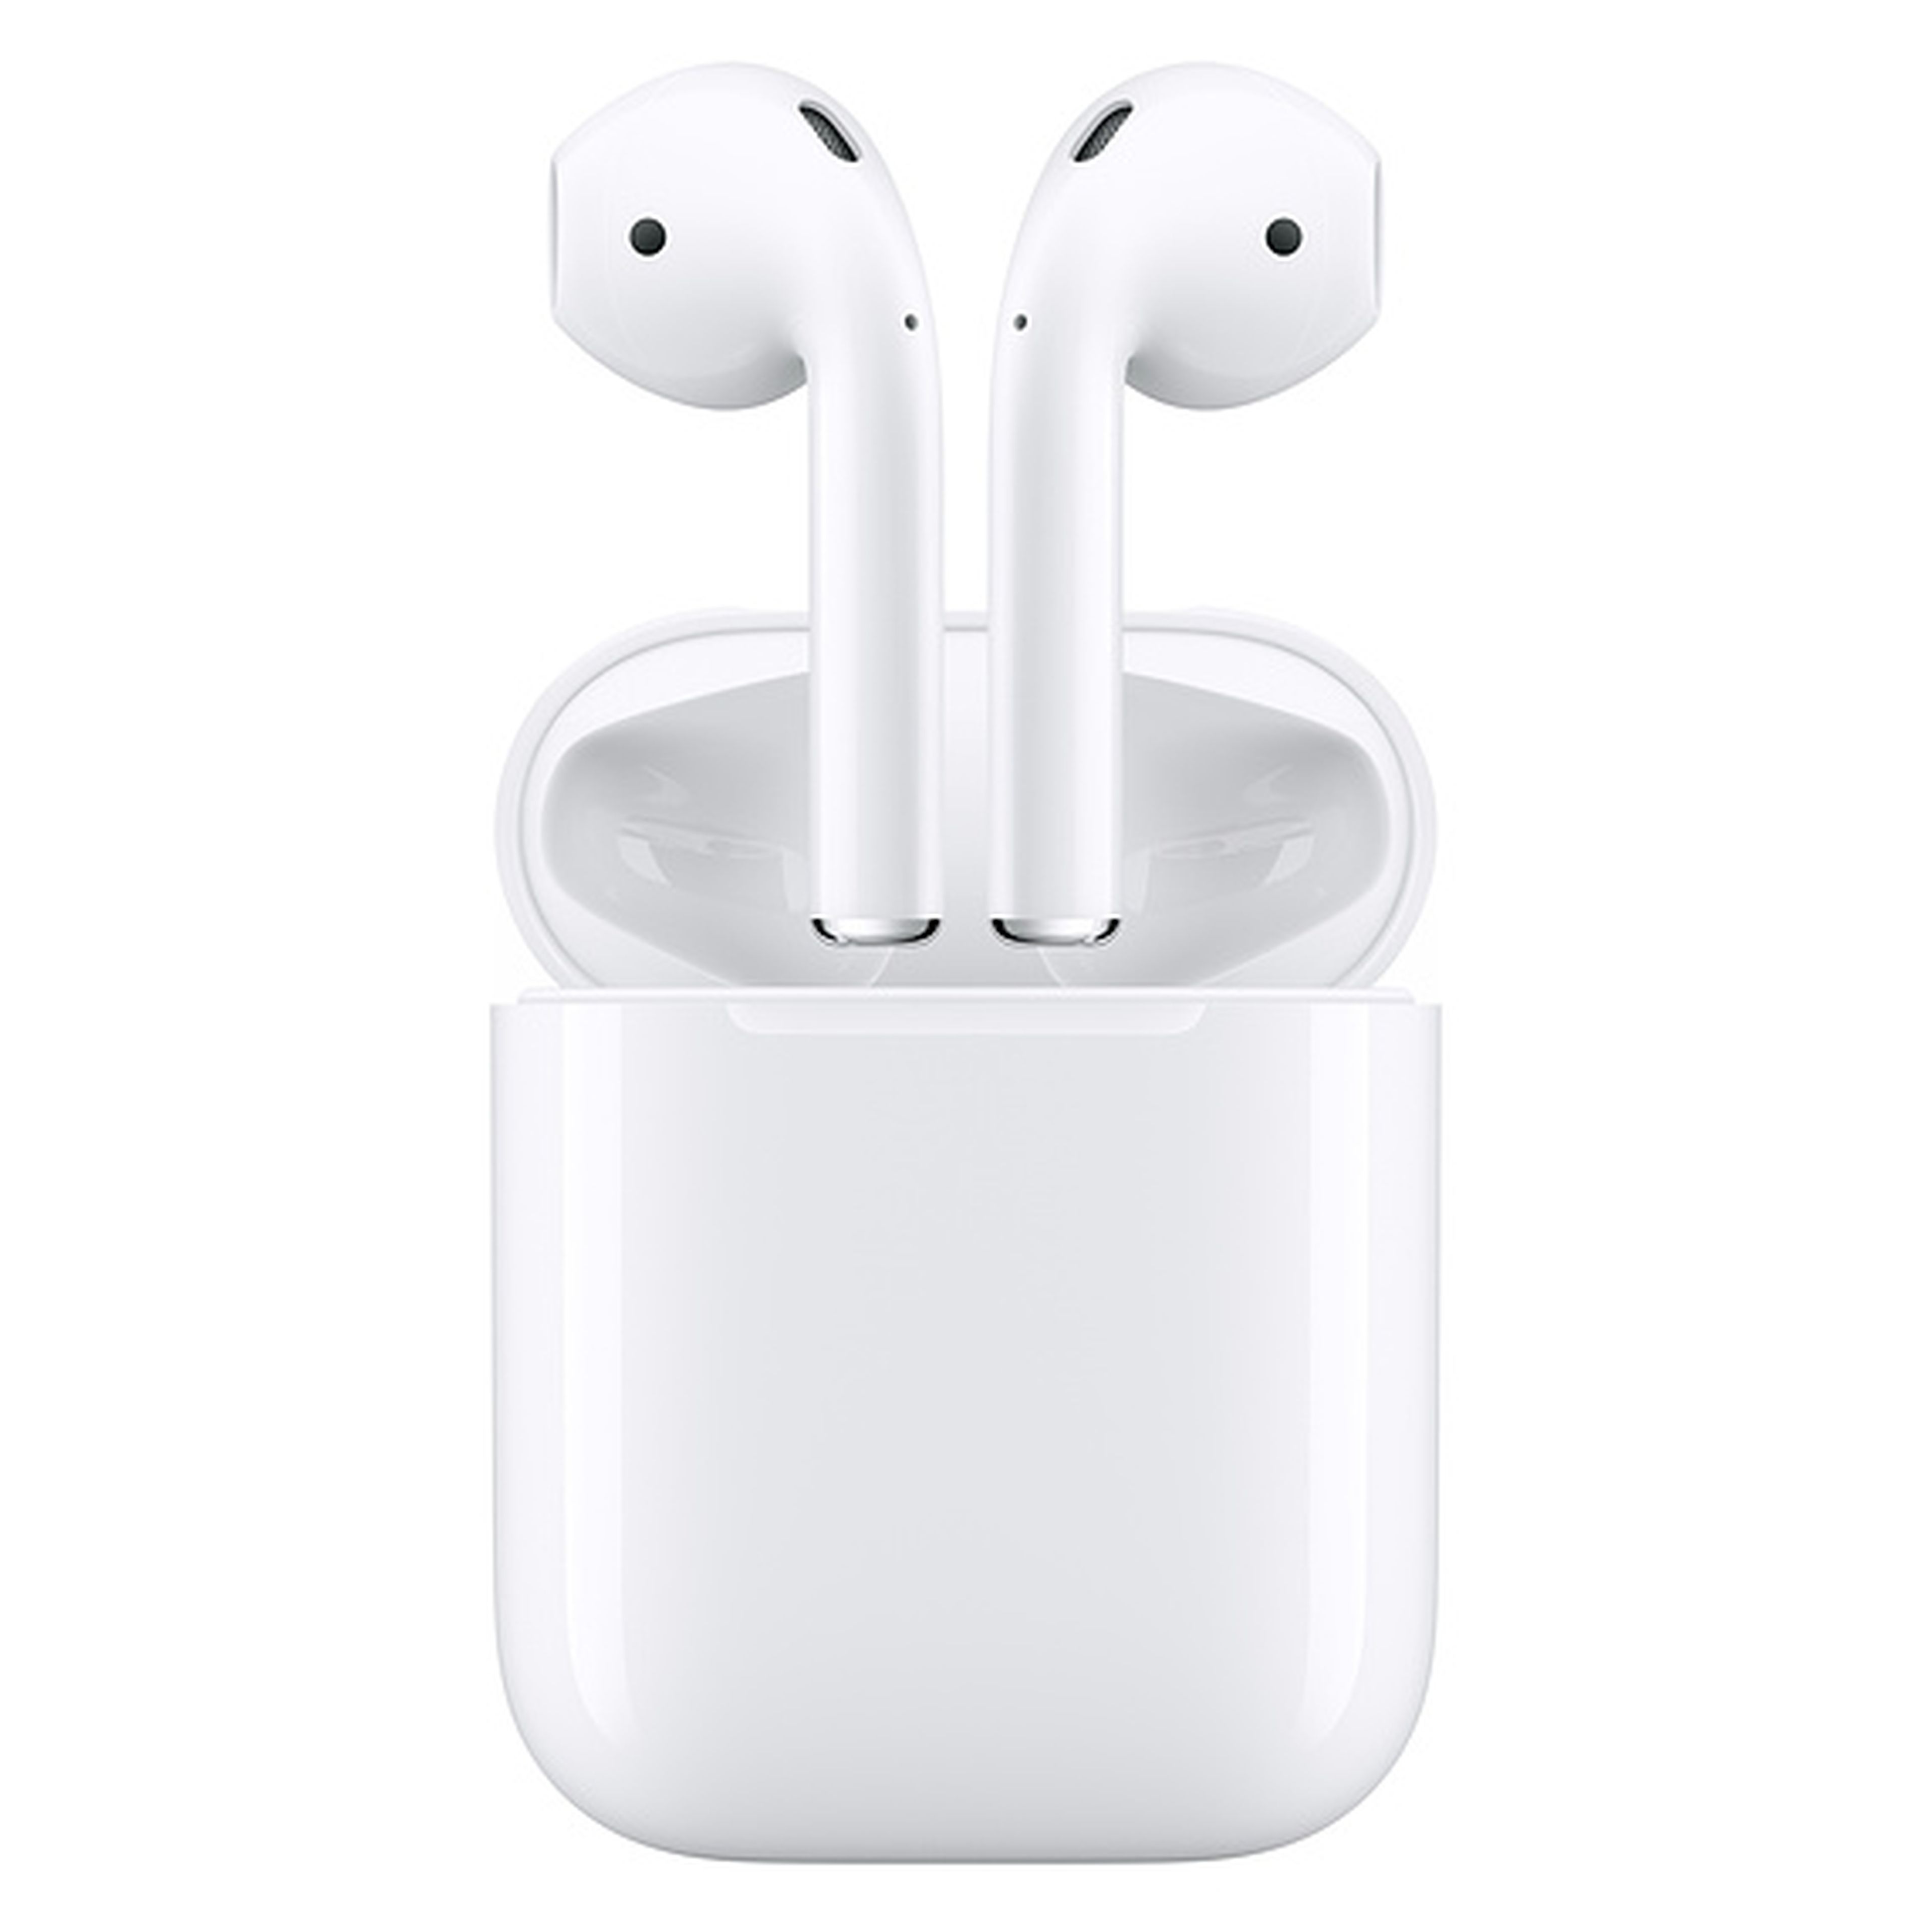 Los auriculares inalámbricos Air Pods de Apple